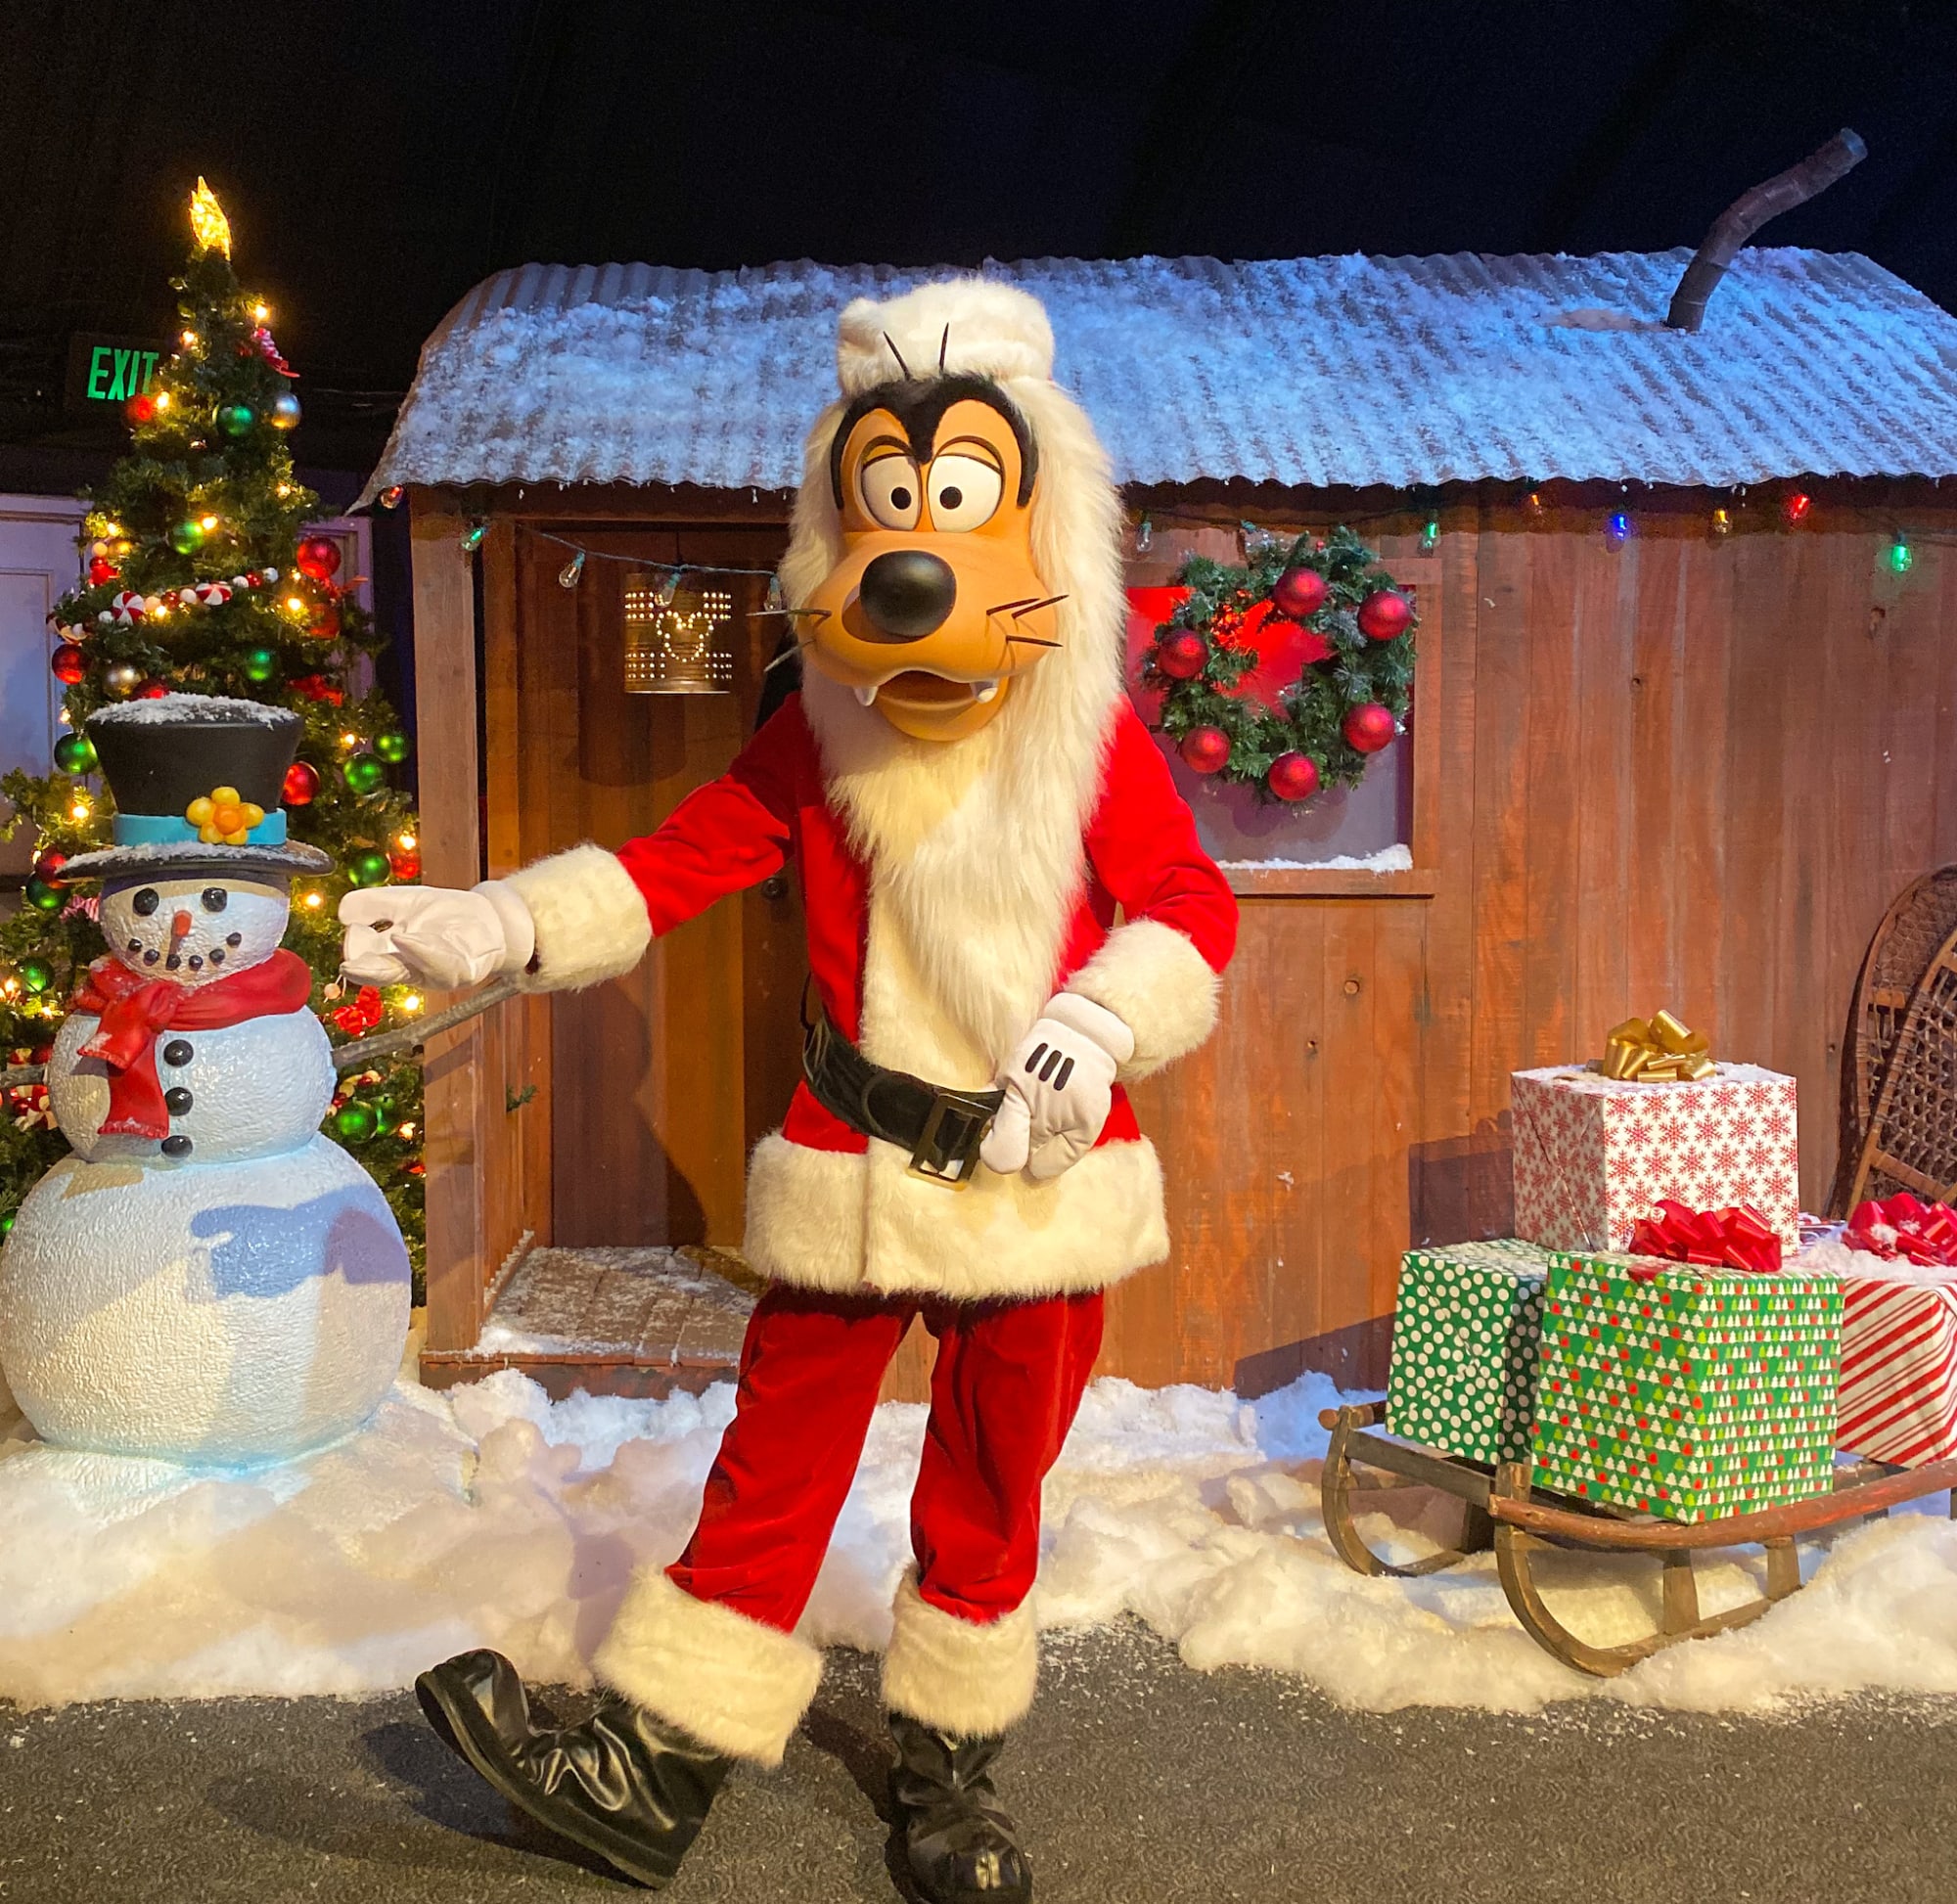 Walt Disney World Holiday treats make the season merry and bright